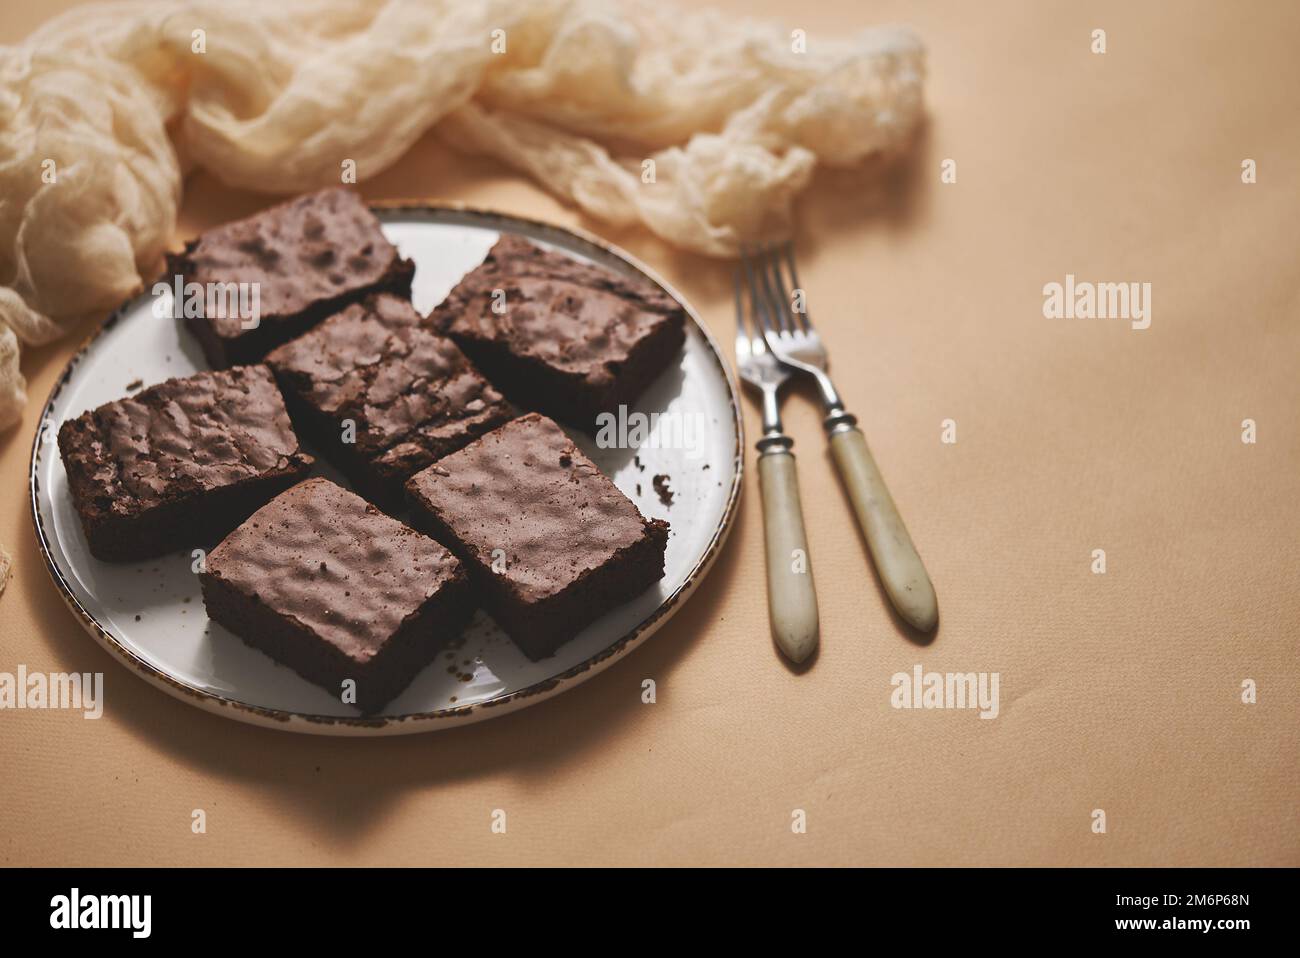 Brownie al cioccolato fatte in casa servite su un piatto bianco su sfondo beige Foto Stock